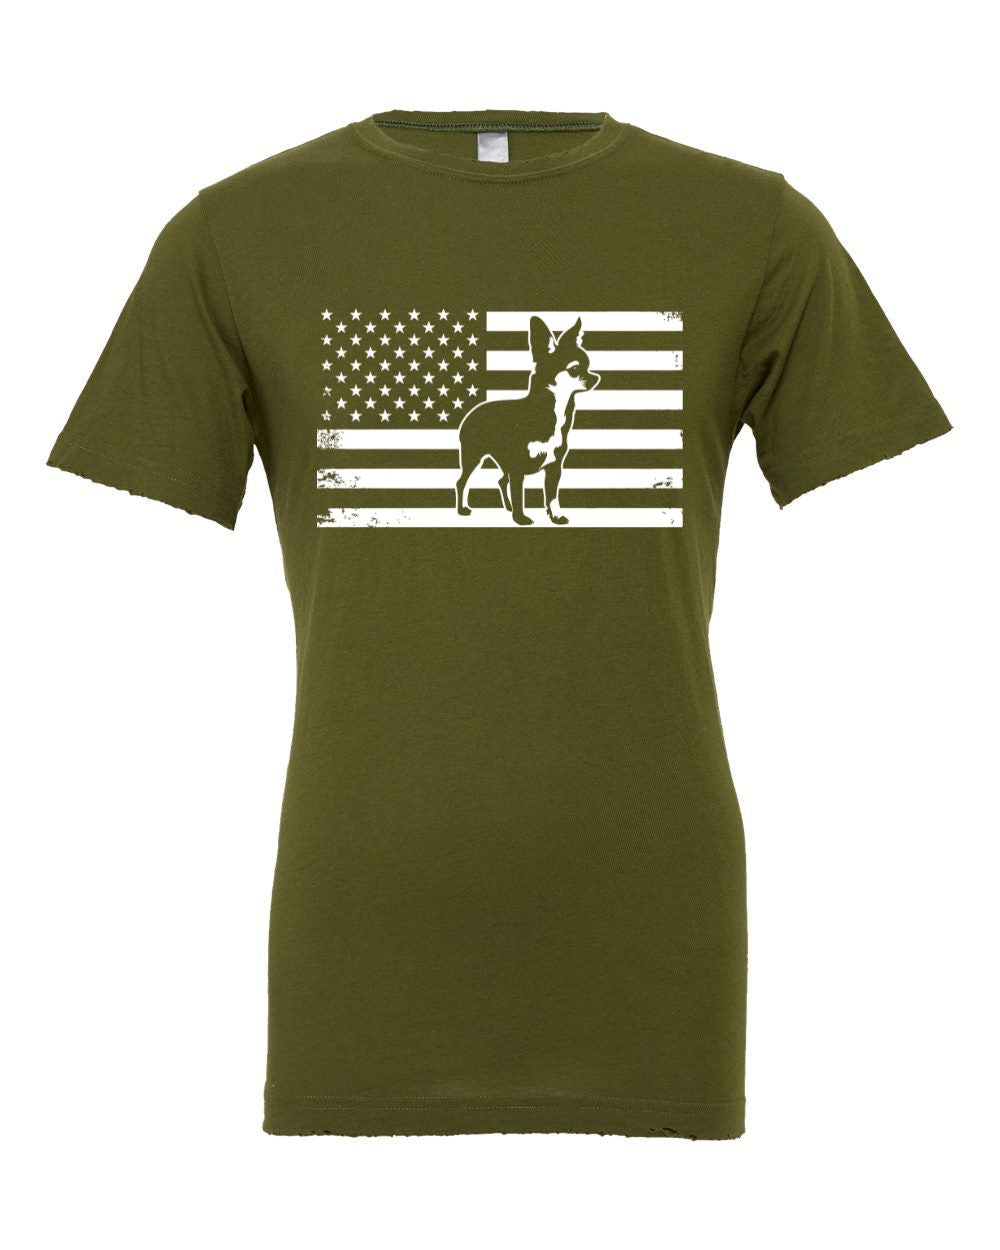 Chihuahua USA Flag T-Shirt